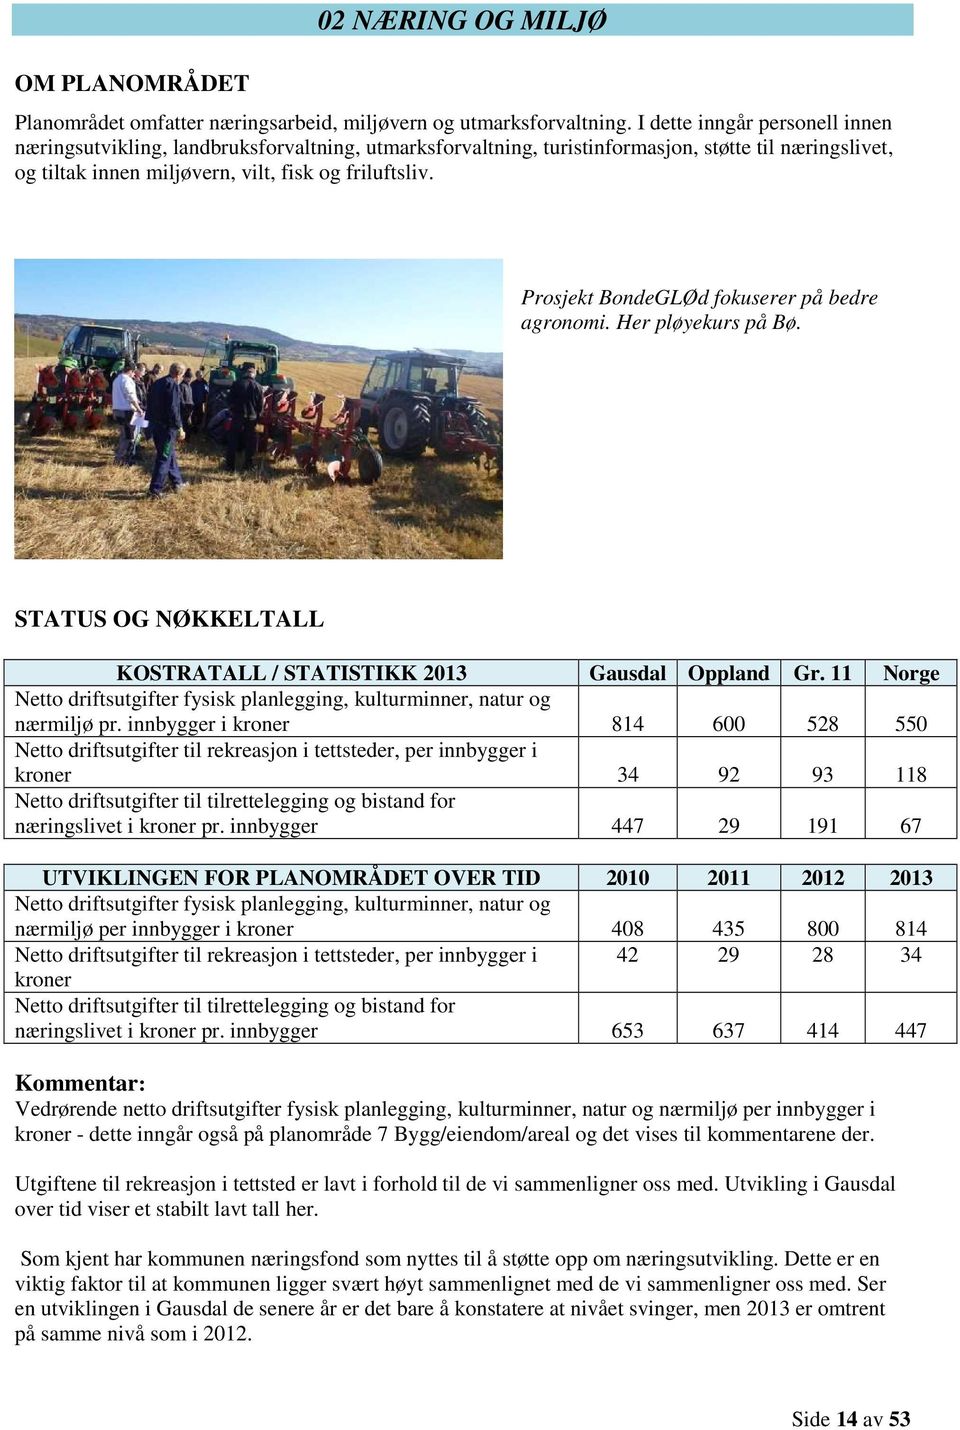 Prosjekt BondeGLØd fokuserer på bedre agronomi. Her pløyekurs på Bø. STATUS OG NØKKELTALL KOSTRATALL / STATISTIKK 2013 Gausdal Oppland Gr.